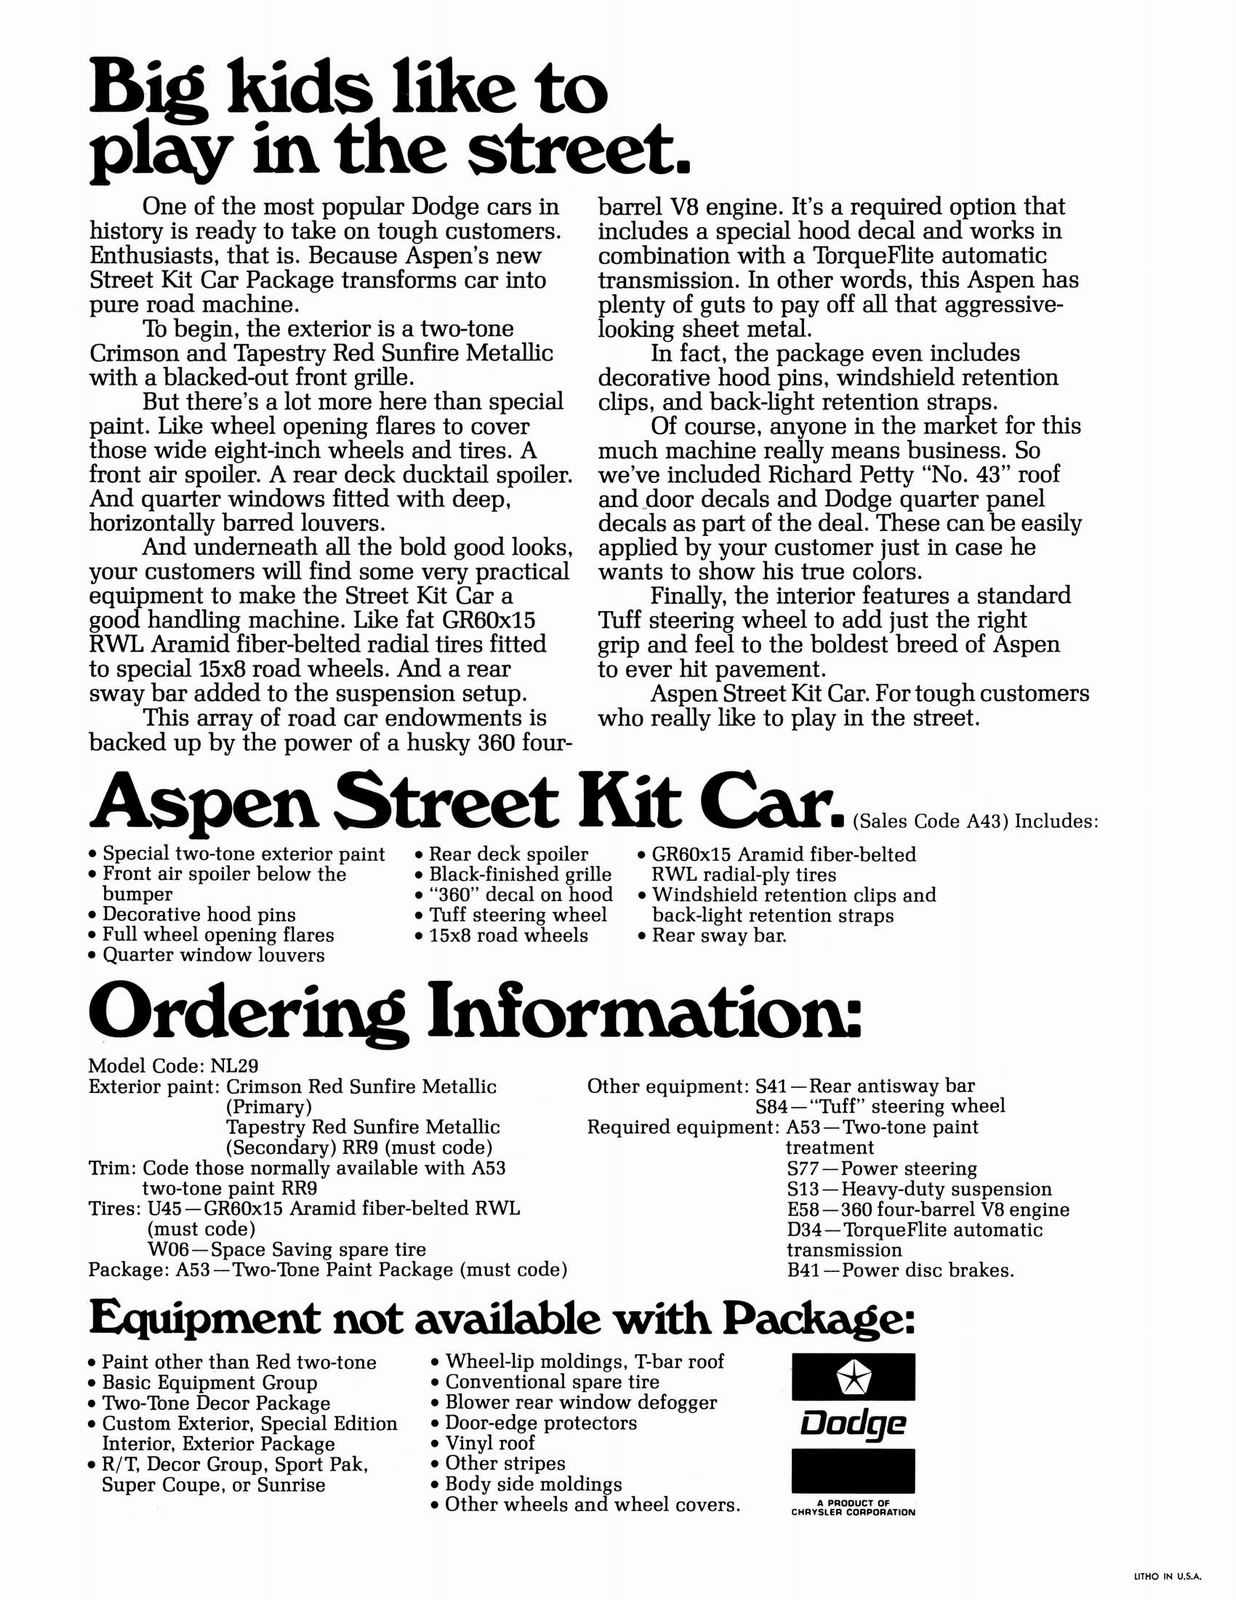 n_1978 Dodge Aspen Street Kit Poster-02.jpg